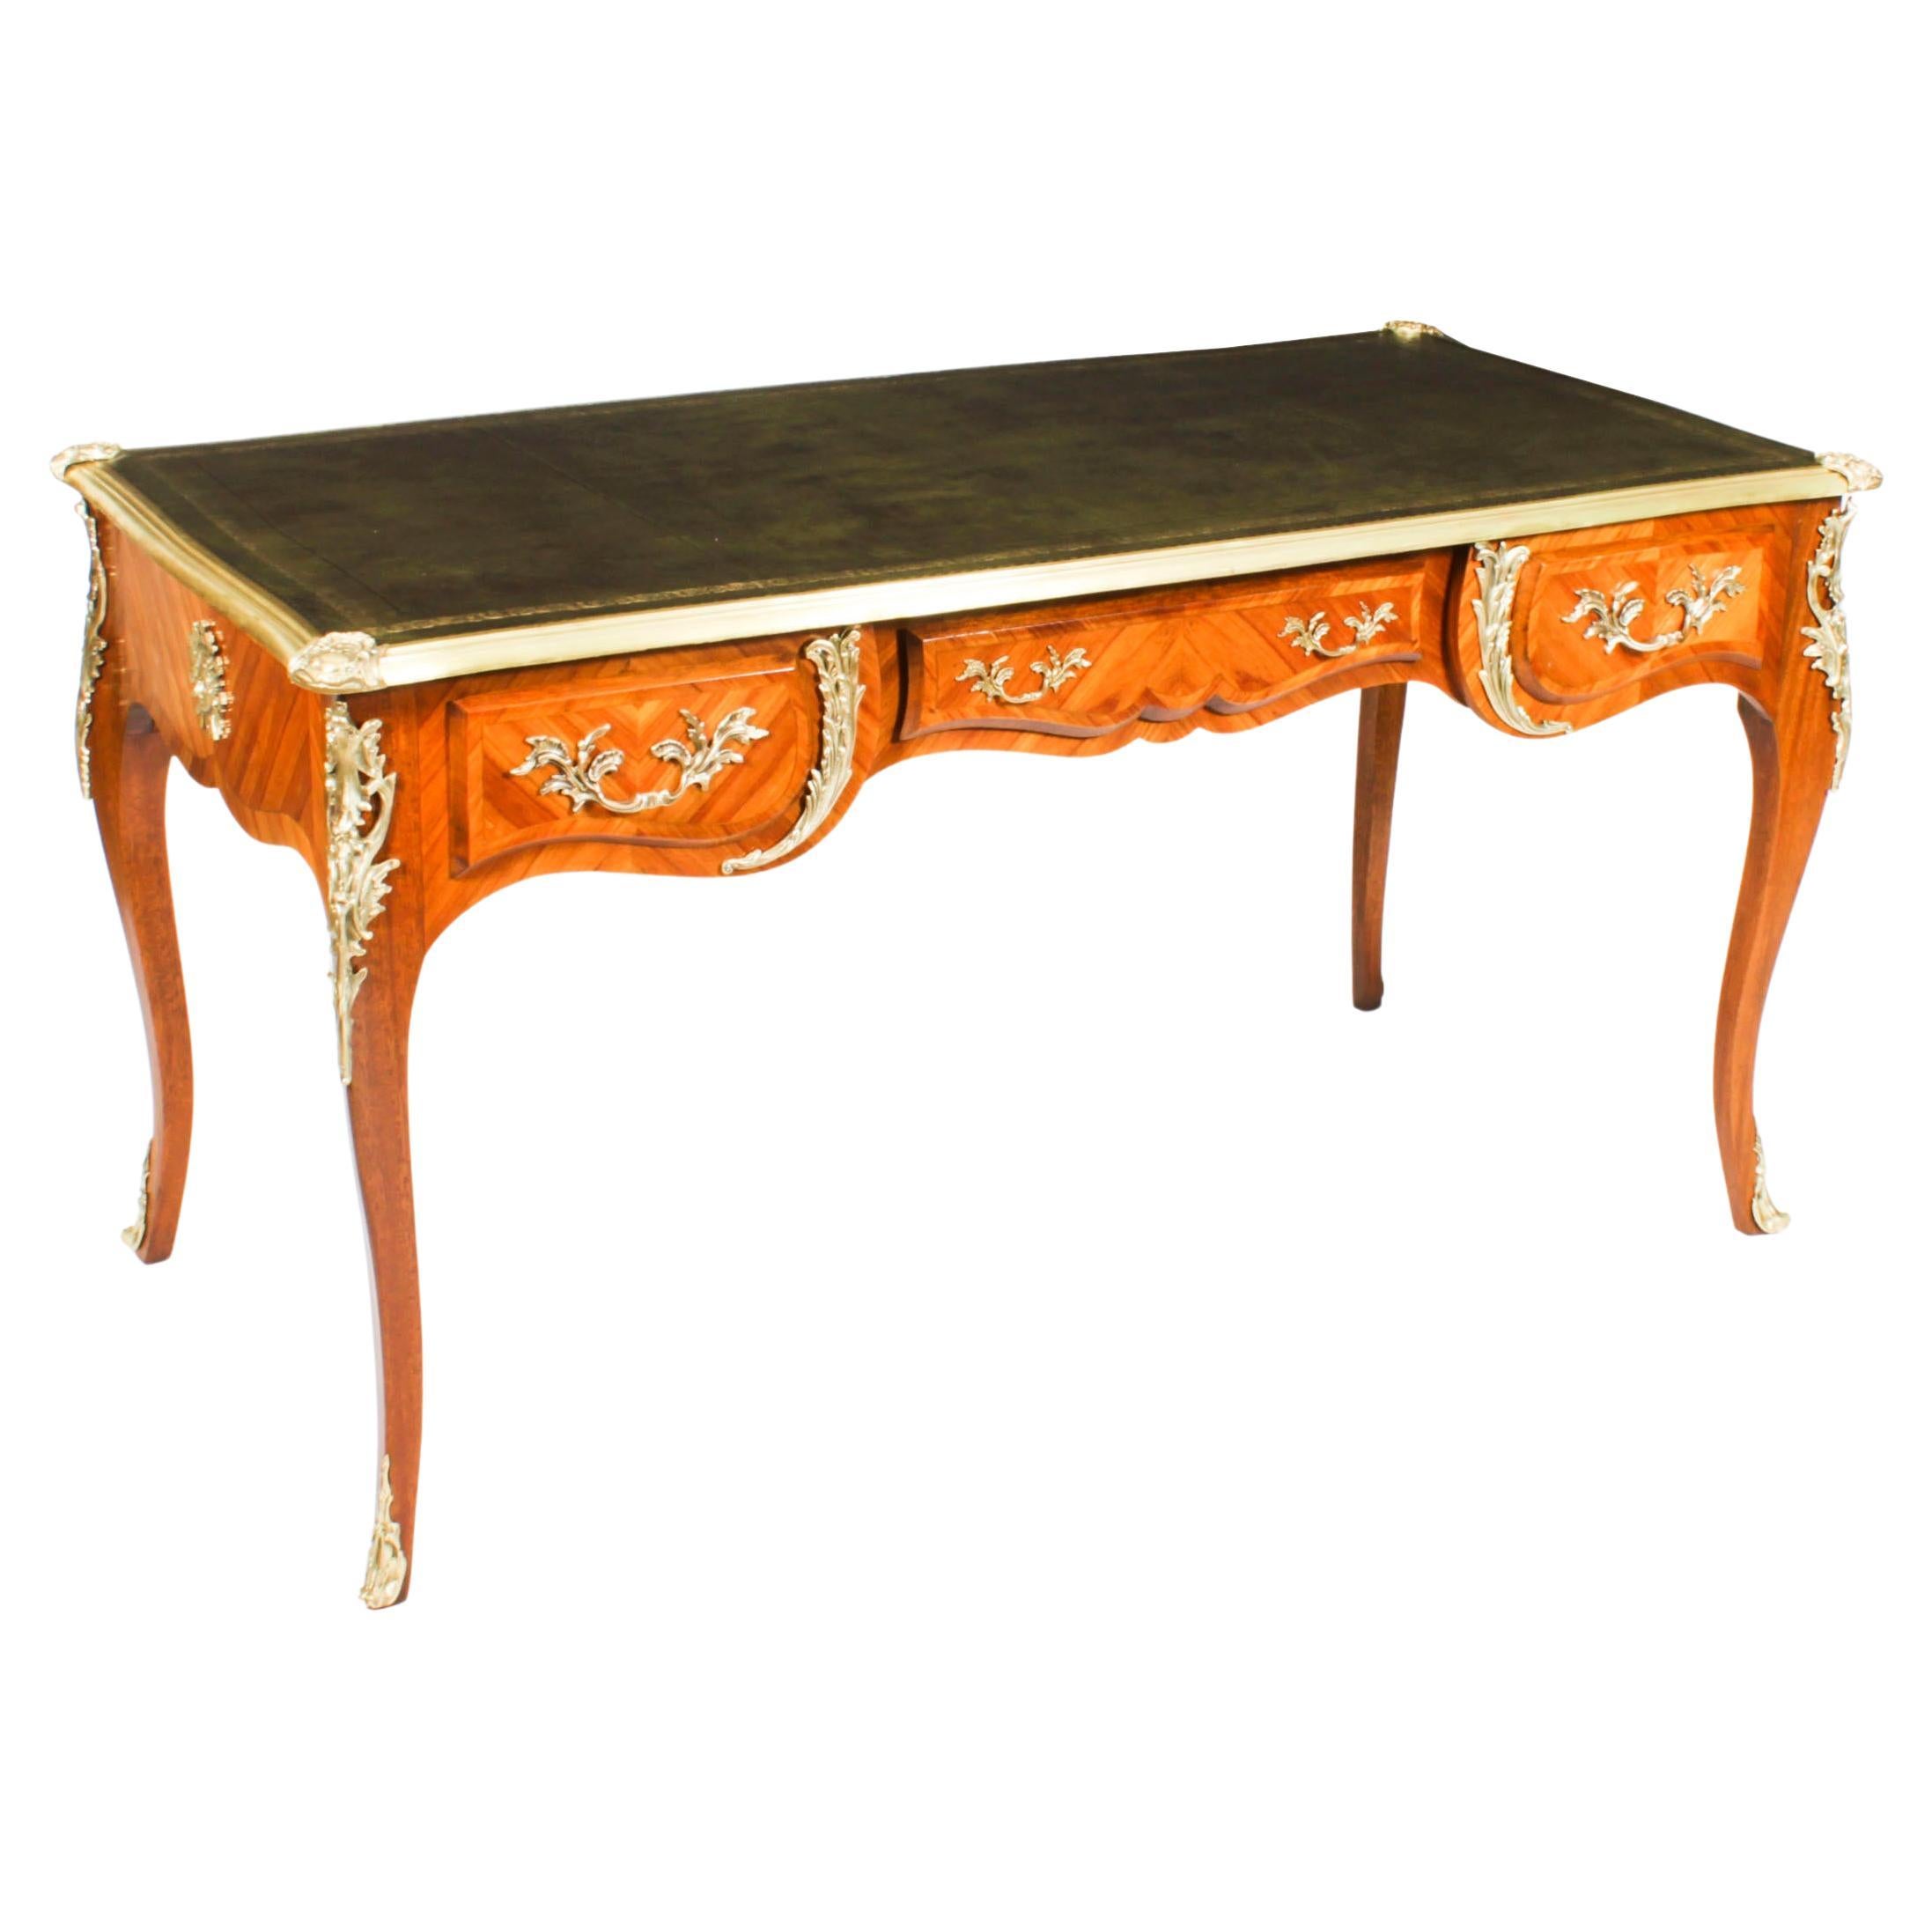 Antique Louis Revival Ormolu Bureau Plat Desk Writing Table 19th C For Sale